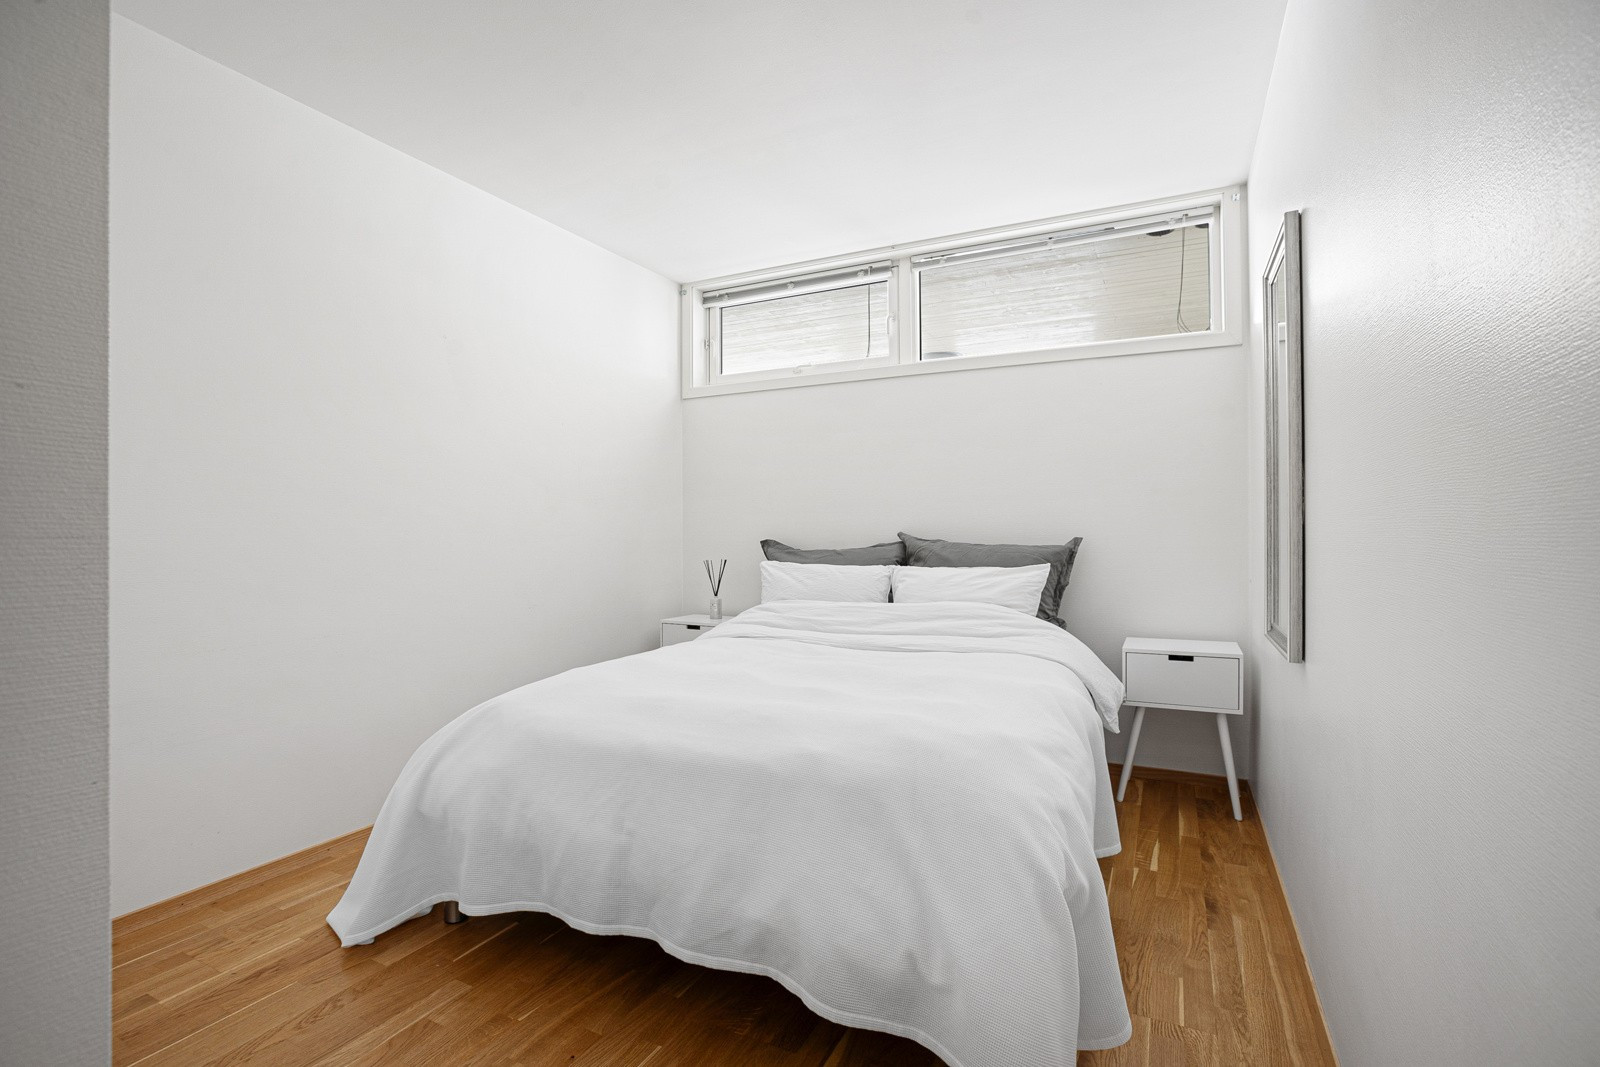 Soverommet er av fin størrelse med plass til dobbelseng og tilhørende møblement.